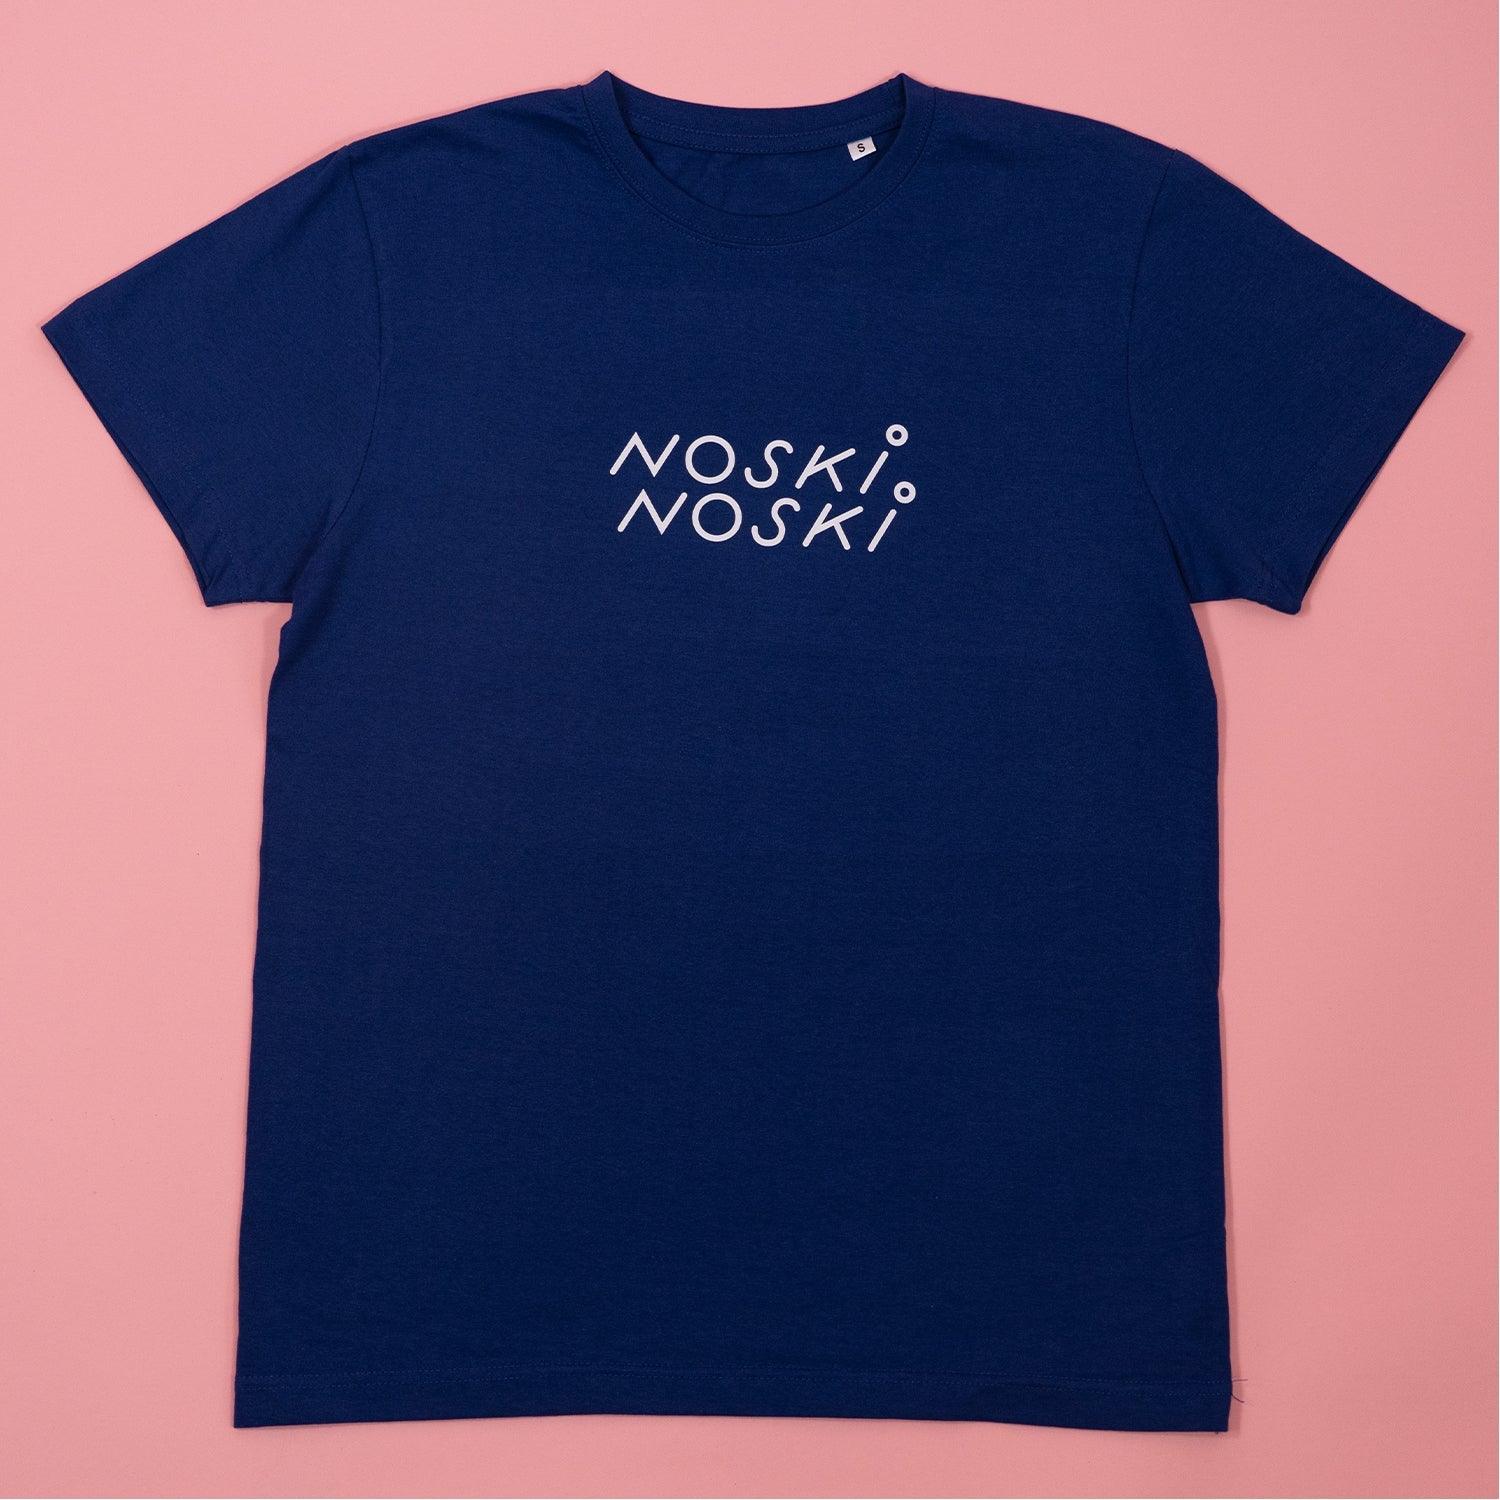 Noski Noski: camisa nn